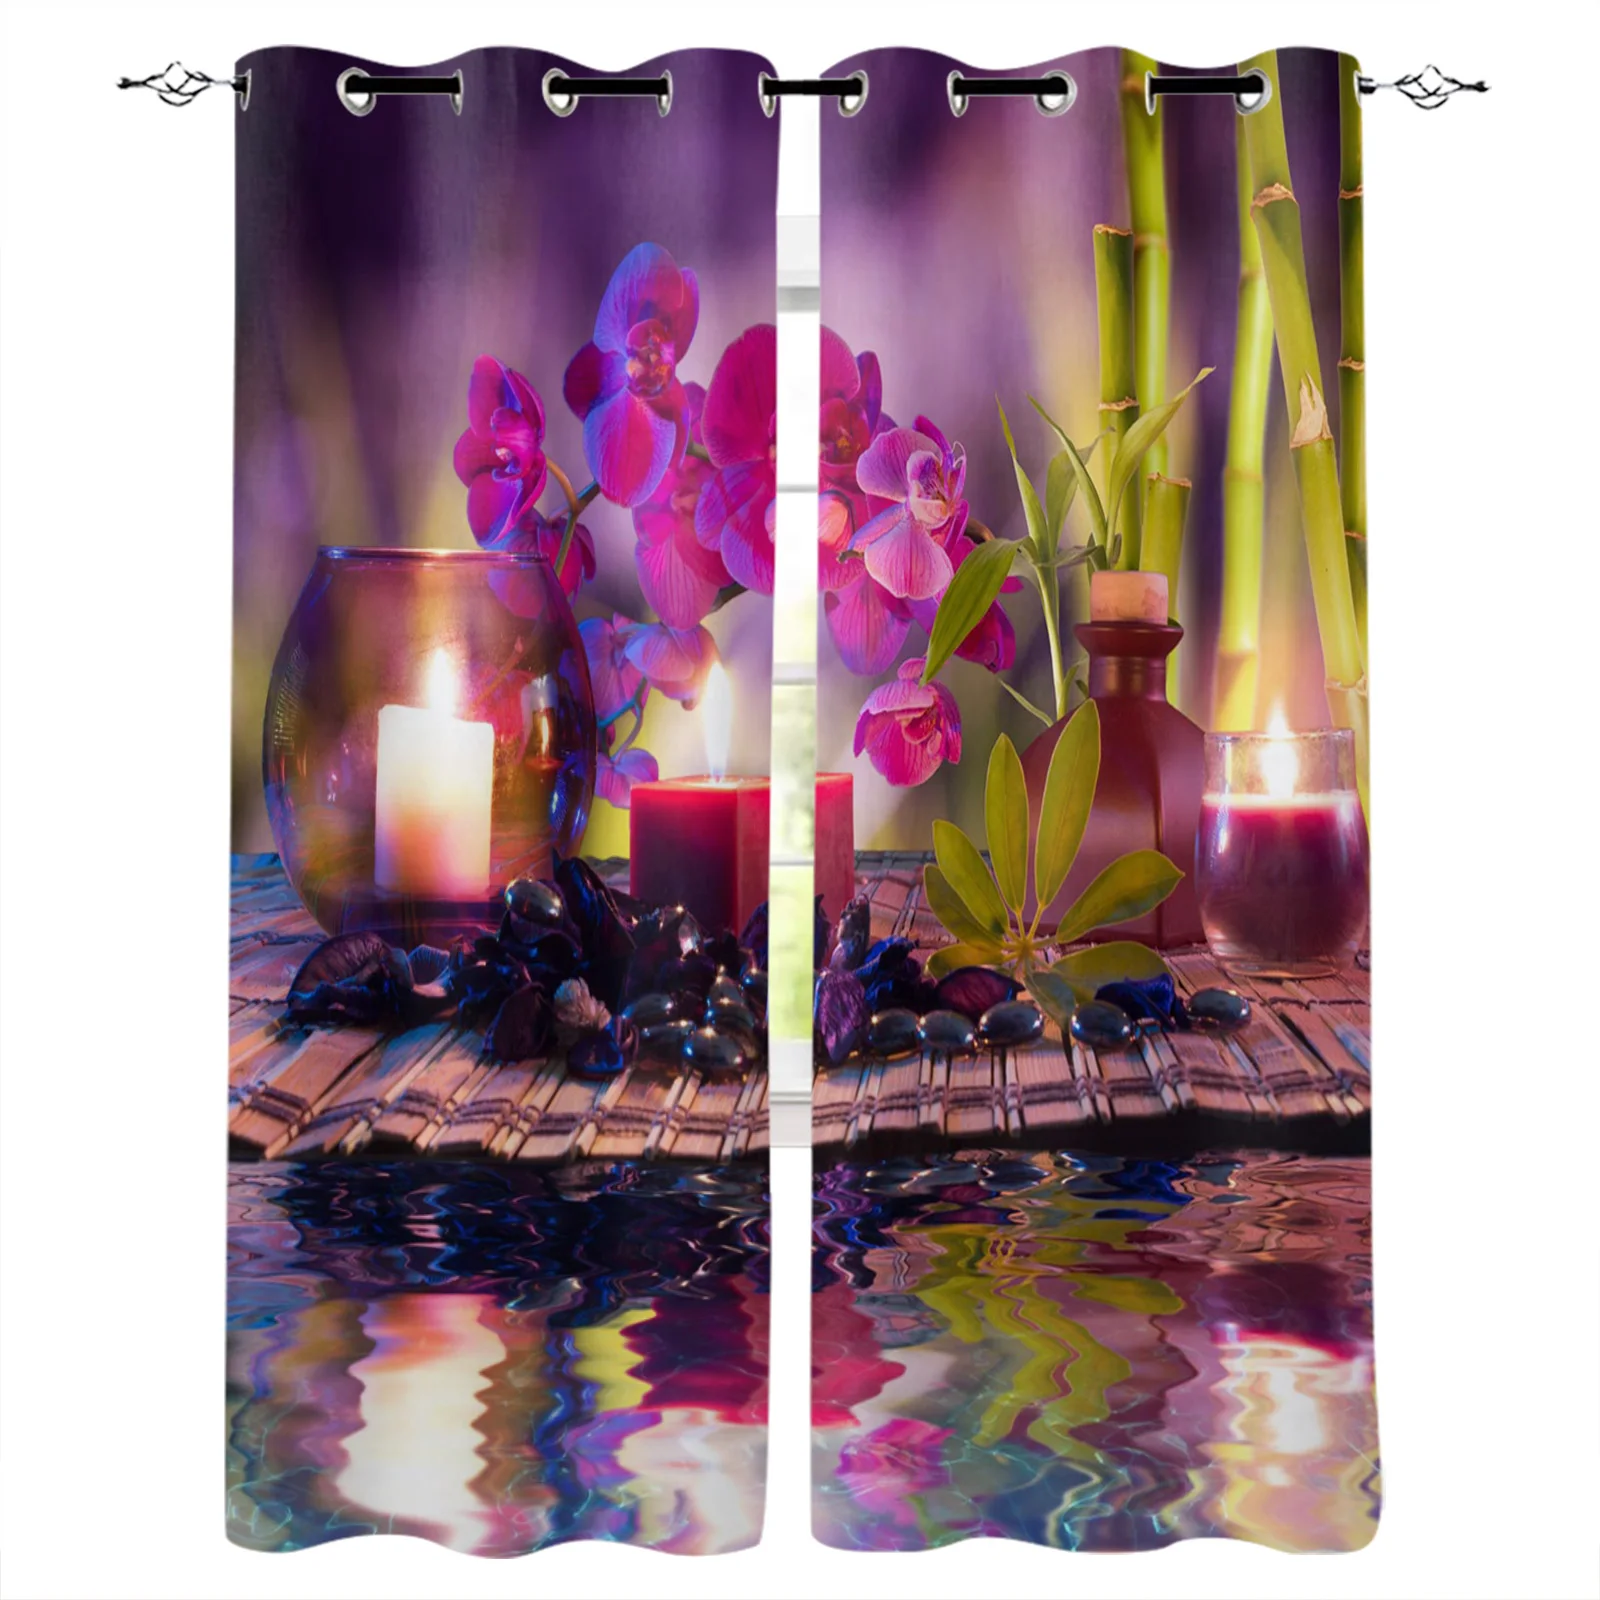 

Фиолетовые свечи Орхидея Бамбуковые каменные затемняющие шторы оконные шторы для спальни гостиной декоративные оконные шторы